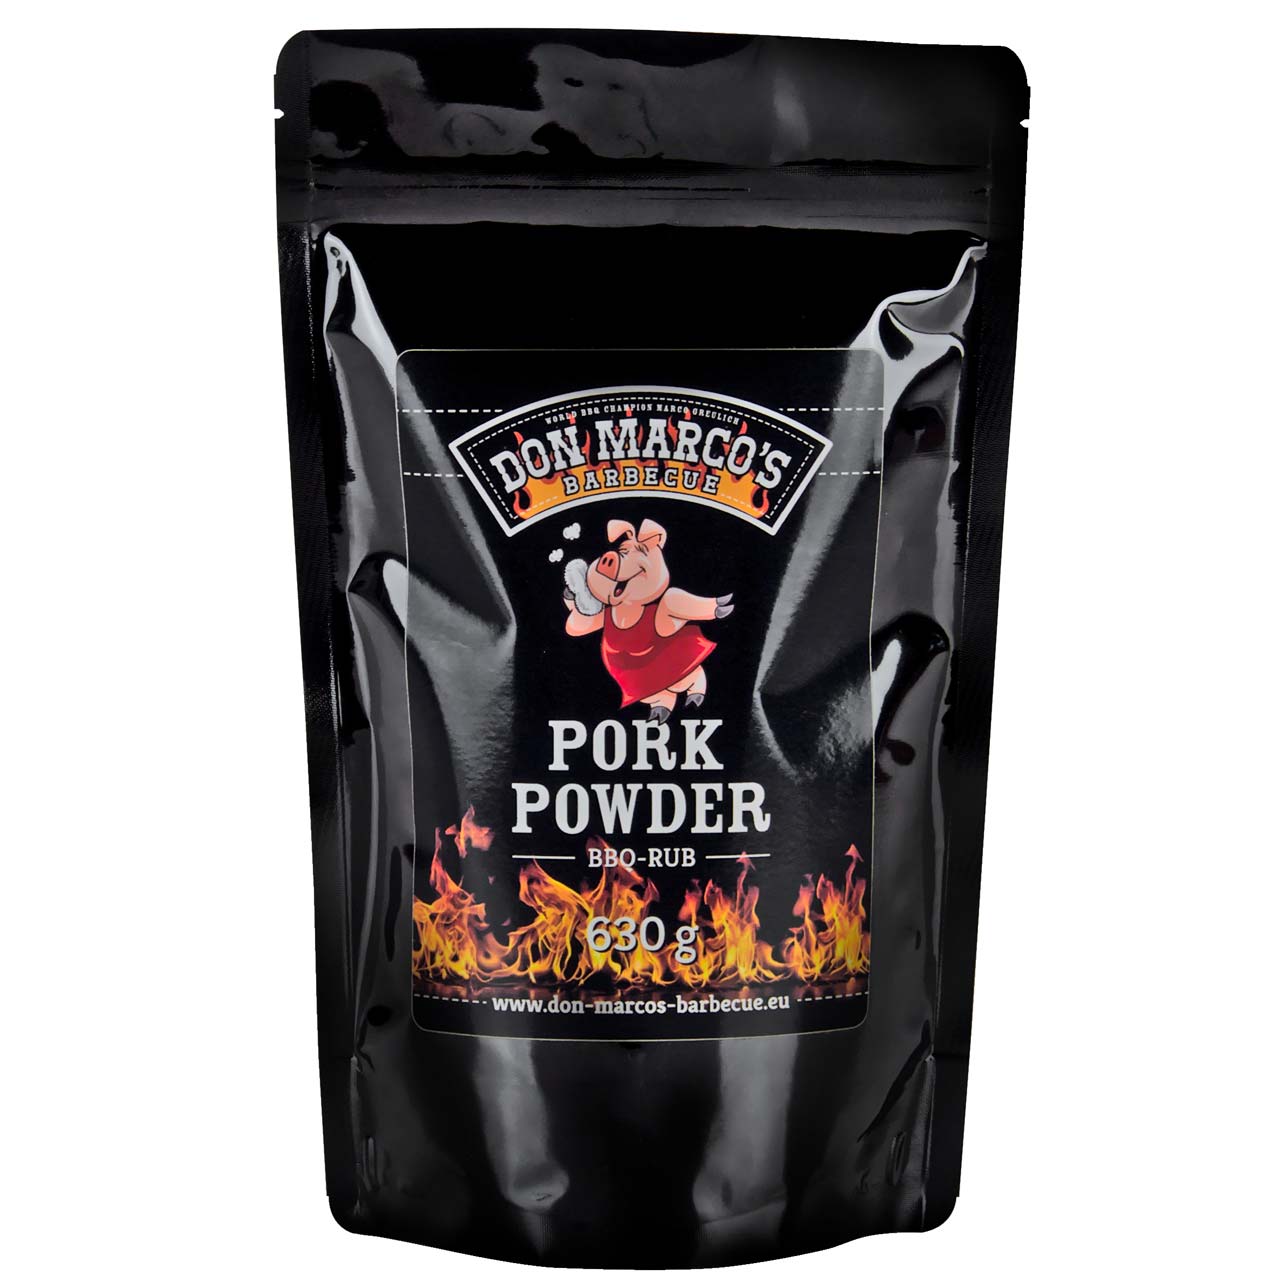 Don Marcos's Pork Powder Rub, 630 g